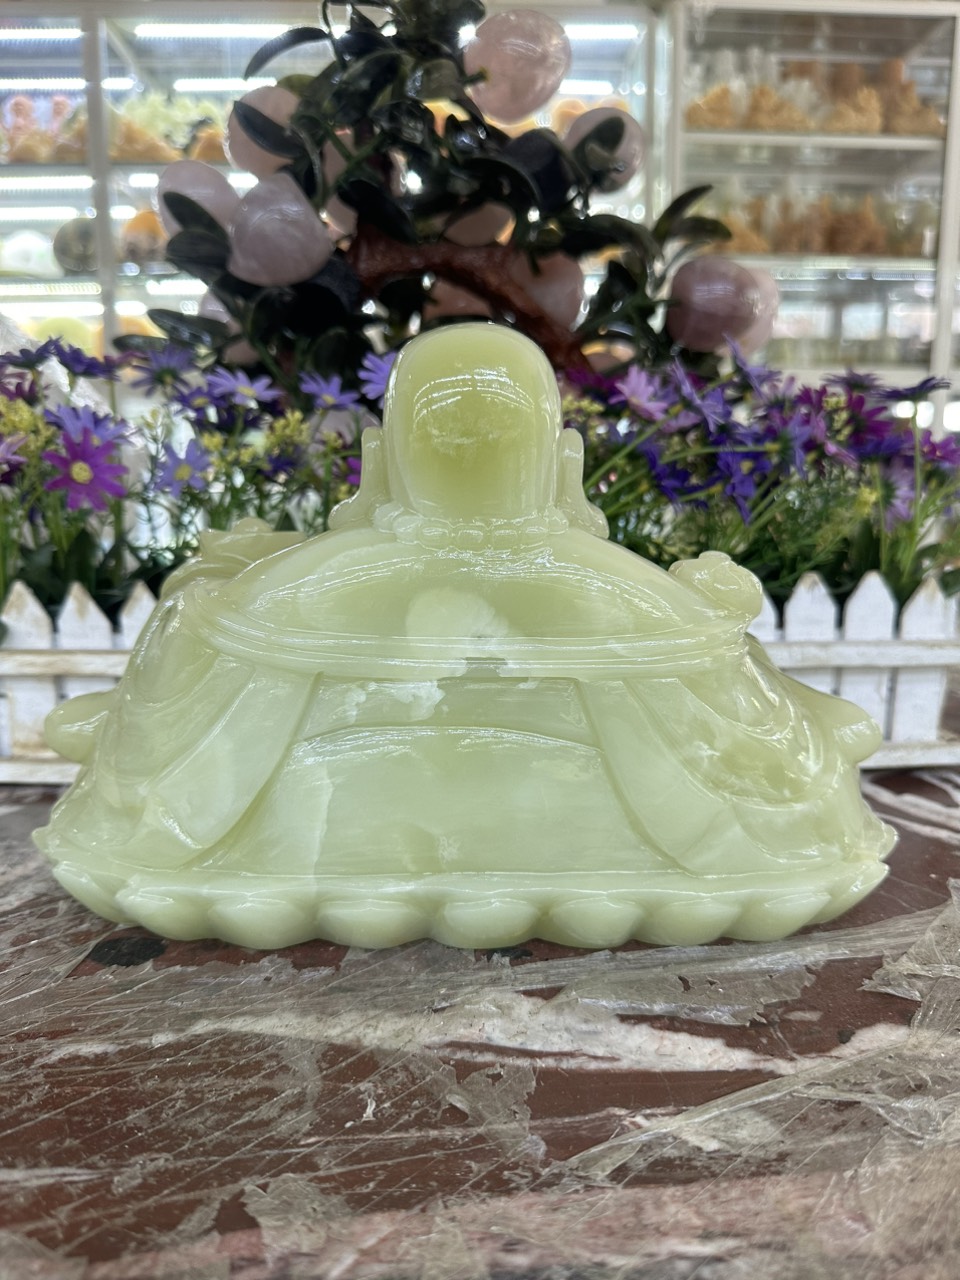 Tượng Phật Di Lặc ngồi tựa bao tiền cầm thỏi vàng phong thủy đá ngọc onyx - Dài 30 cm